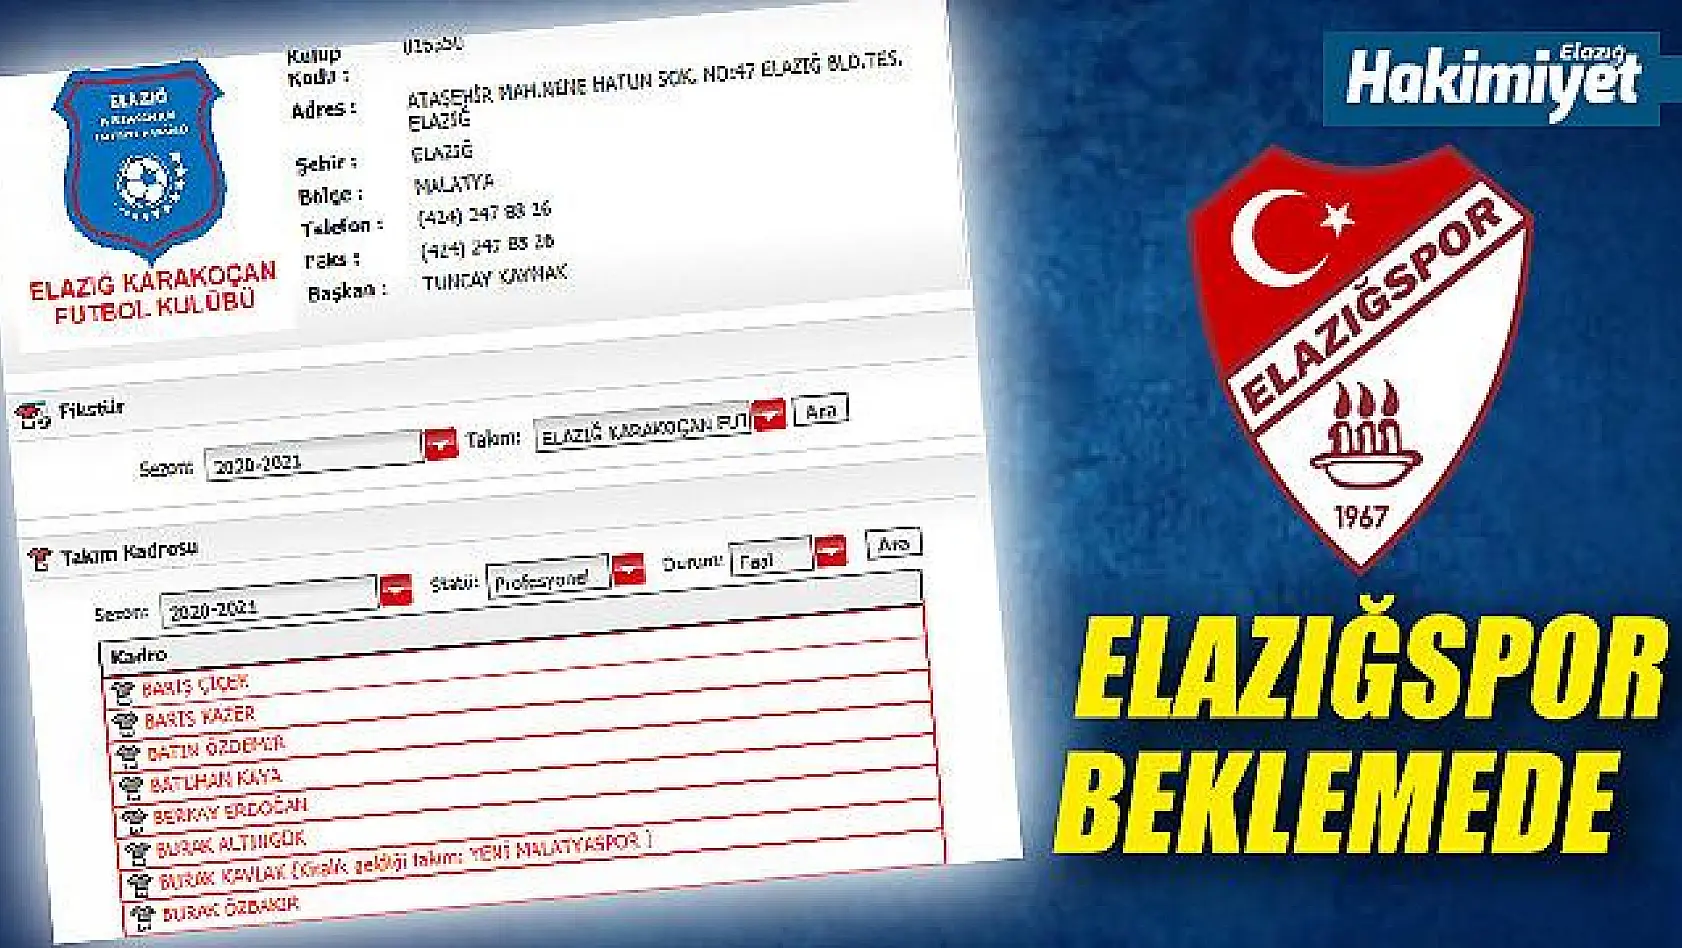 Elazığspor beklemede, Karakoçan FK'da lisanslar çıktı!